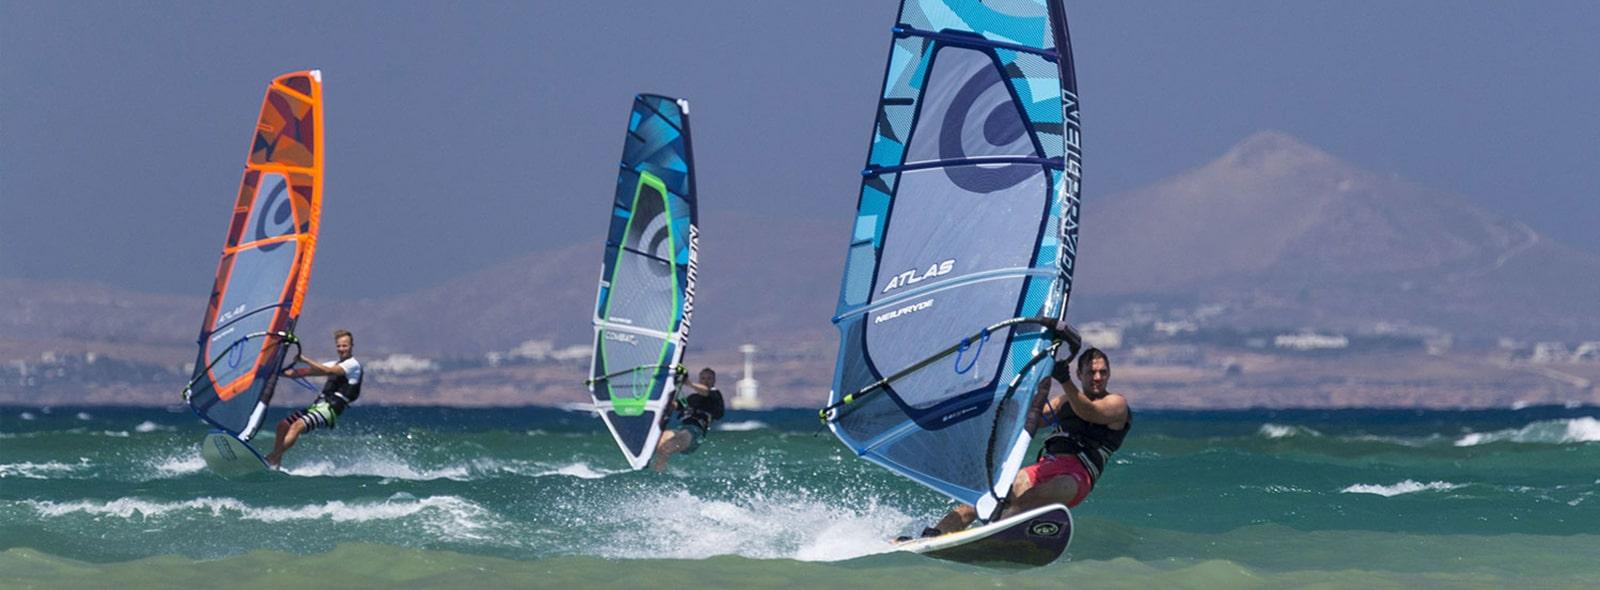 Bienvenue sur le spot de Naxos en Grèce pour faire du windsurf